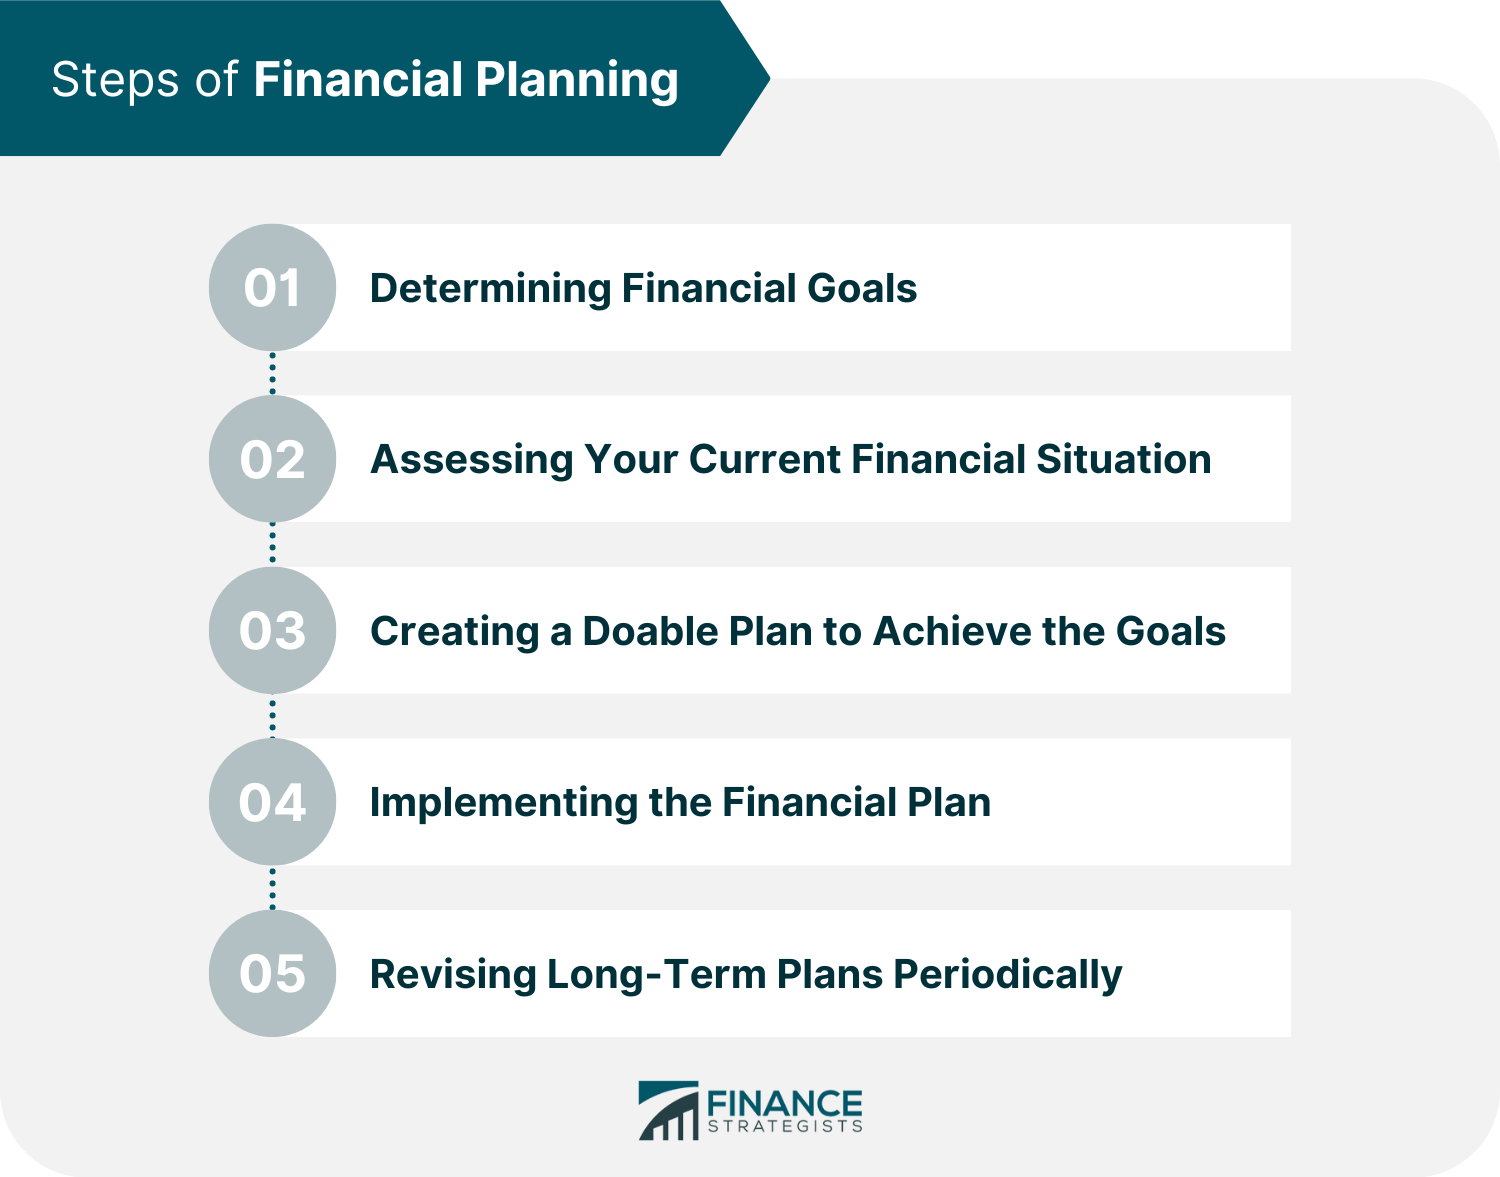 https://www.financestrategists.com/financial-advisor/financial-plan/